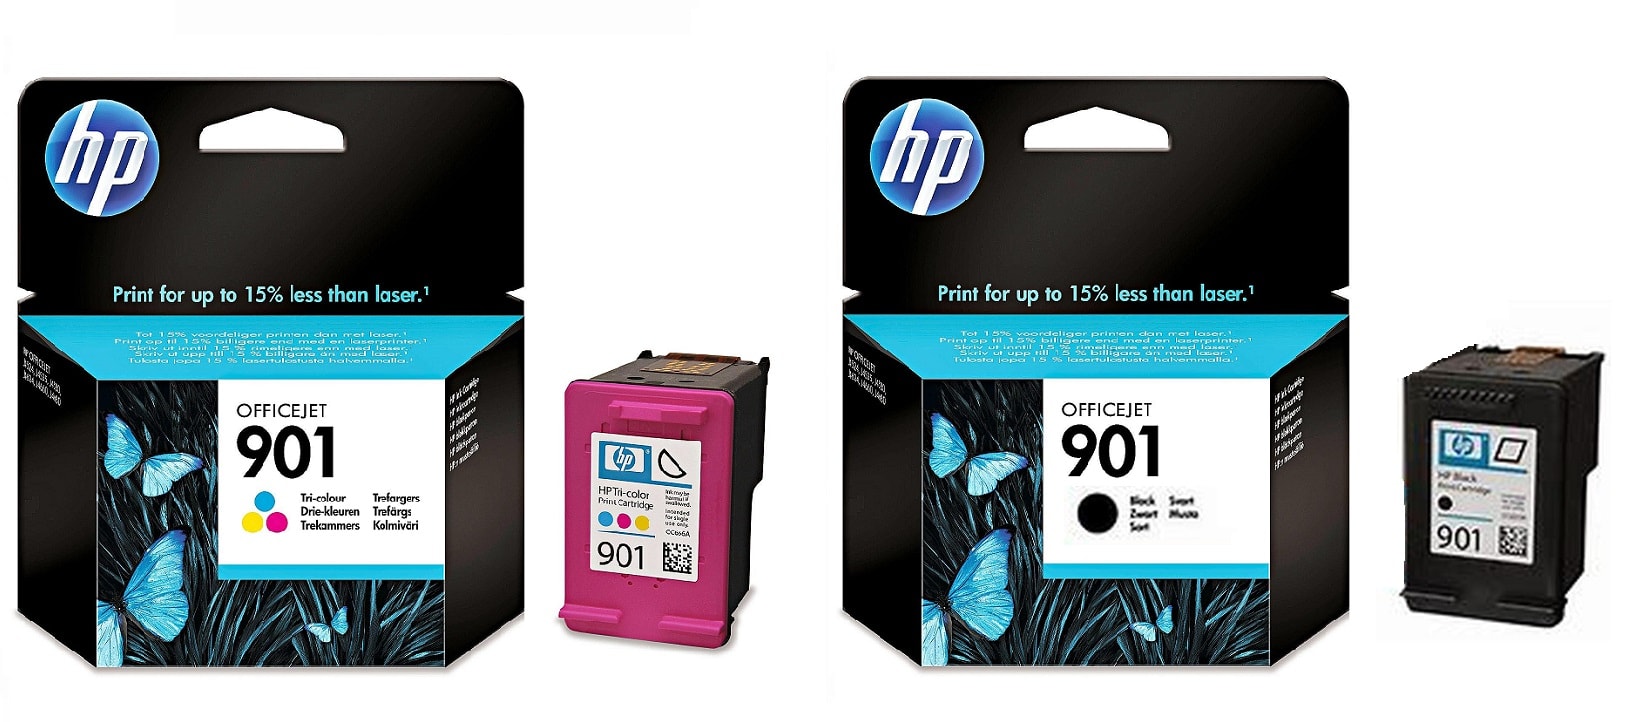 Картриджи hp 901 black hp 901 color для HP Officejet J4524. Купить комплект оригинальных картриджей.